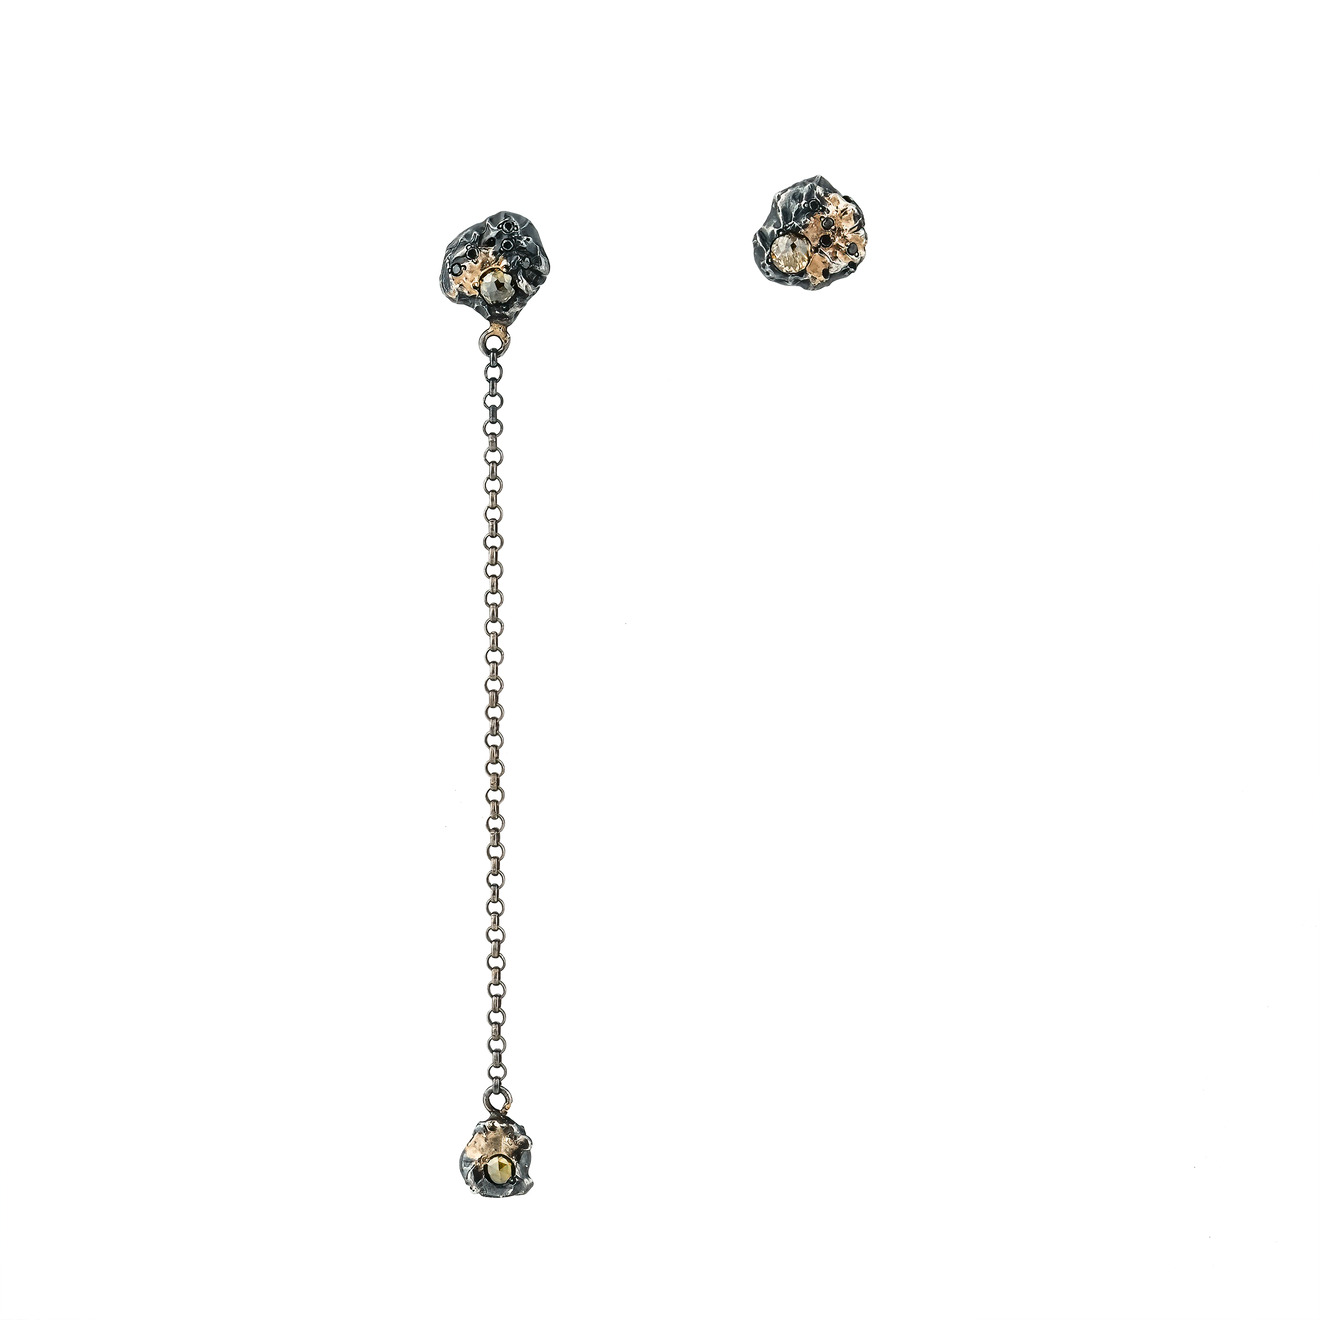 Kintsugi Jewelry Асимметричные серьги Rough diamond из серебра с позолотой и вставками из бриллиантов